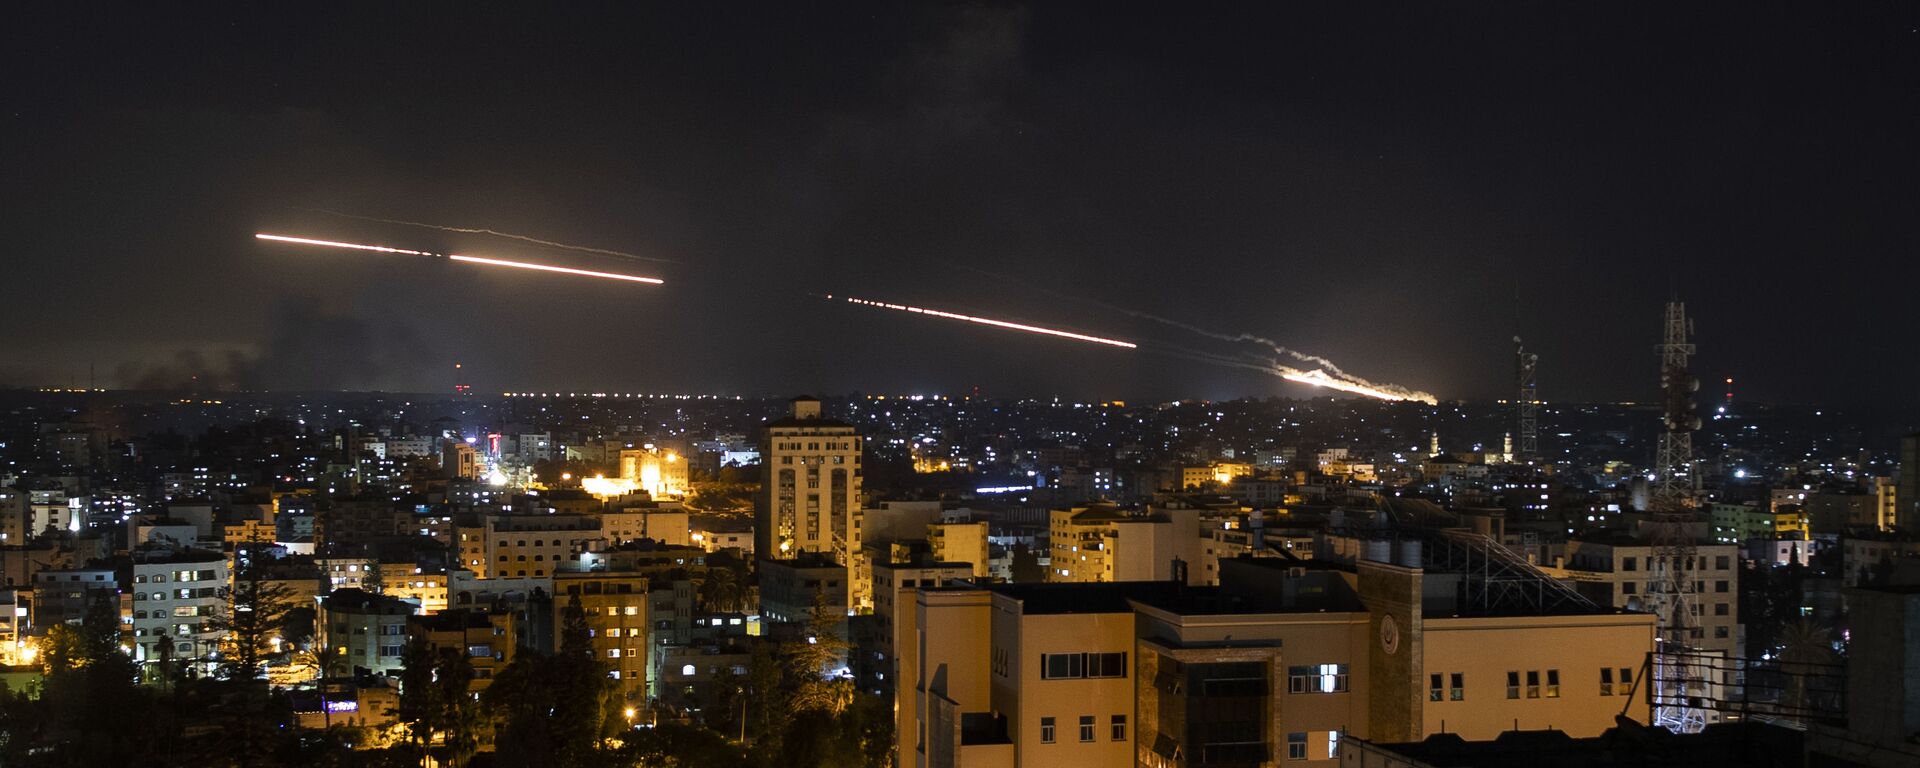  شلیک بیش از 200 موشک طی شب گذشته از غزه به سمت اسرائیل - اسپوتنیک افغانستان  , 1920, 15.05.2021